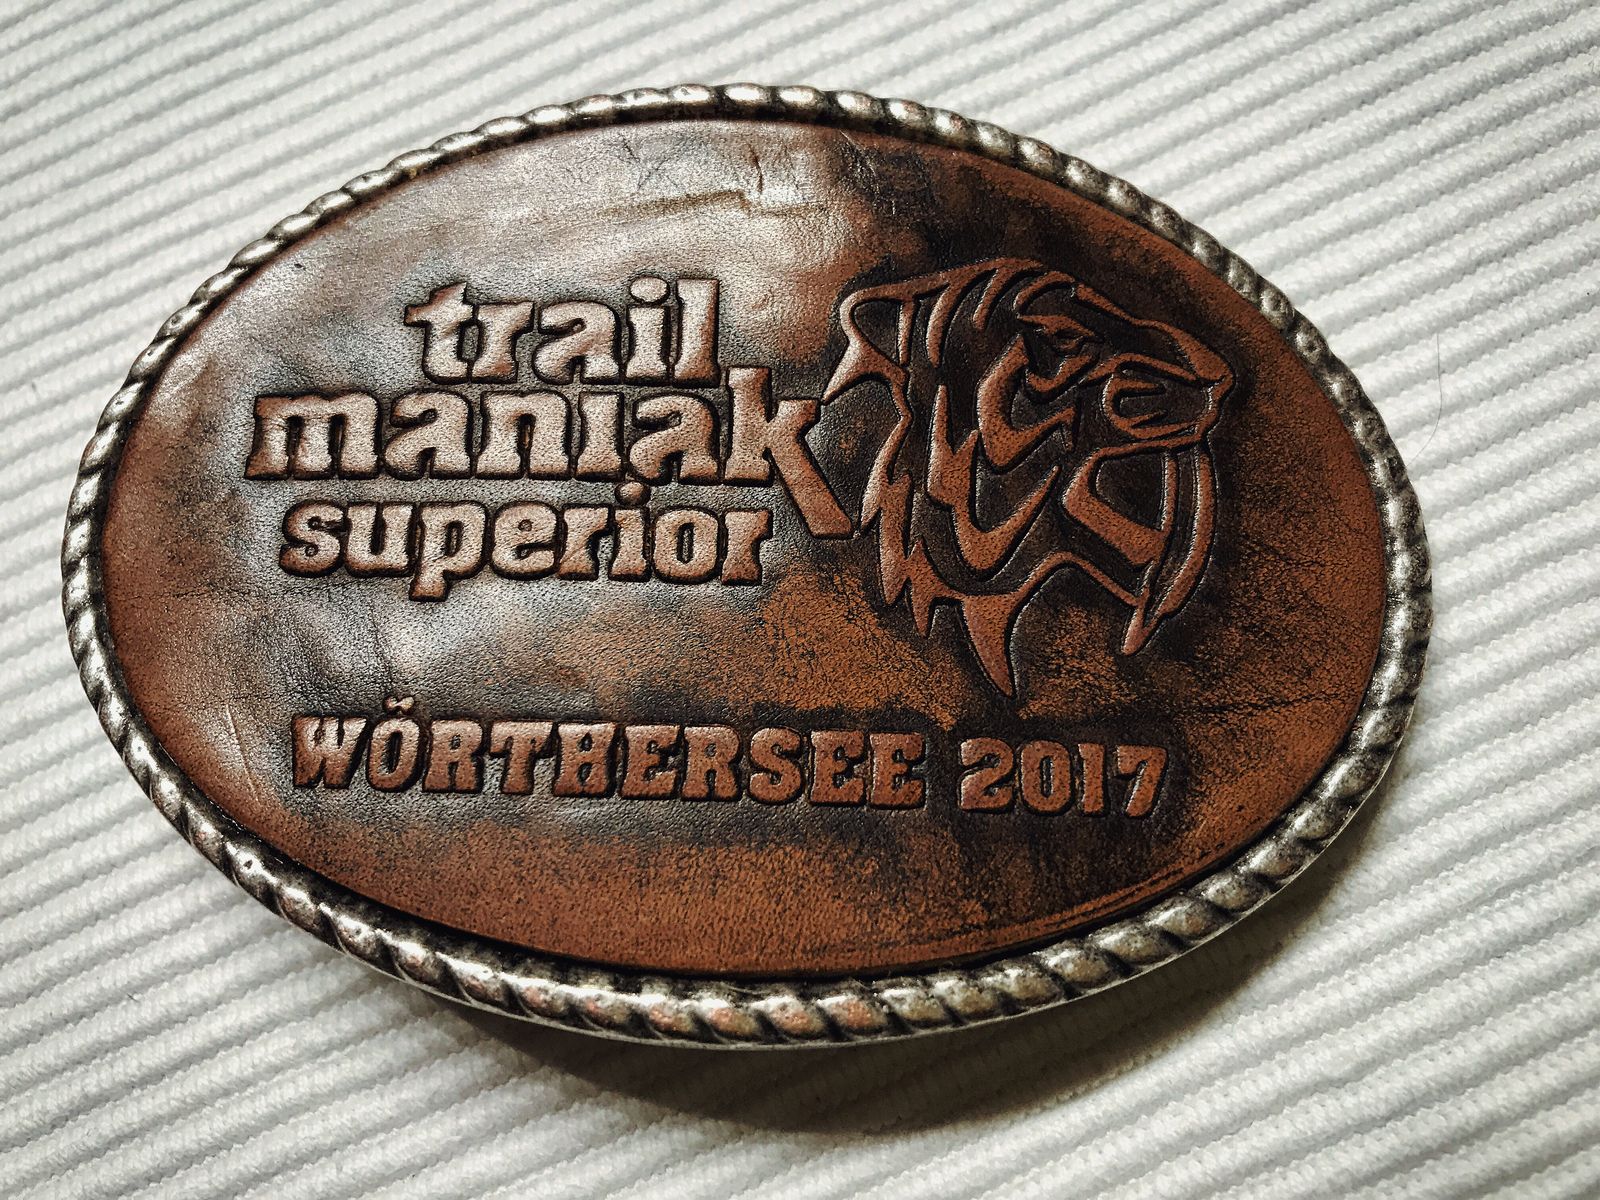 Trailmaniak - Monte Carlo Platz, Pörtschach, Kärnten, Austria am 23 September 2017